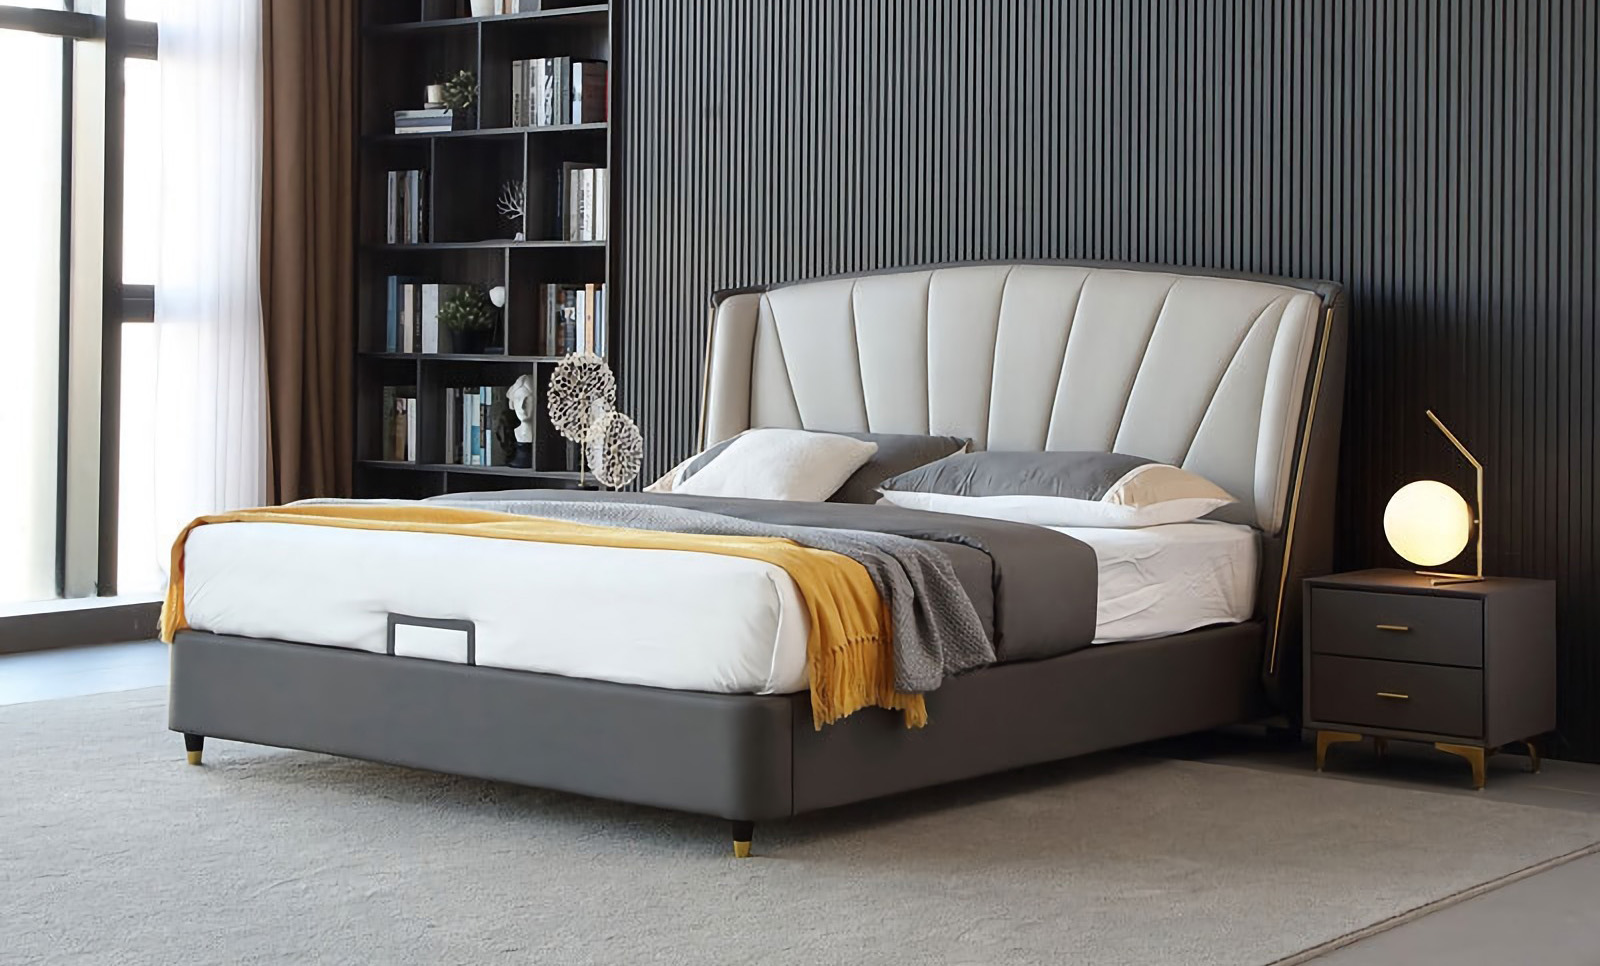 Diseño de cama minimalista moderno Características de la cama minimalista moderna.